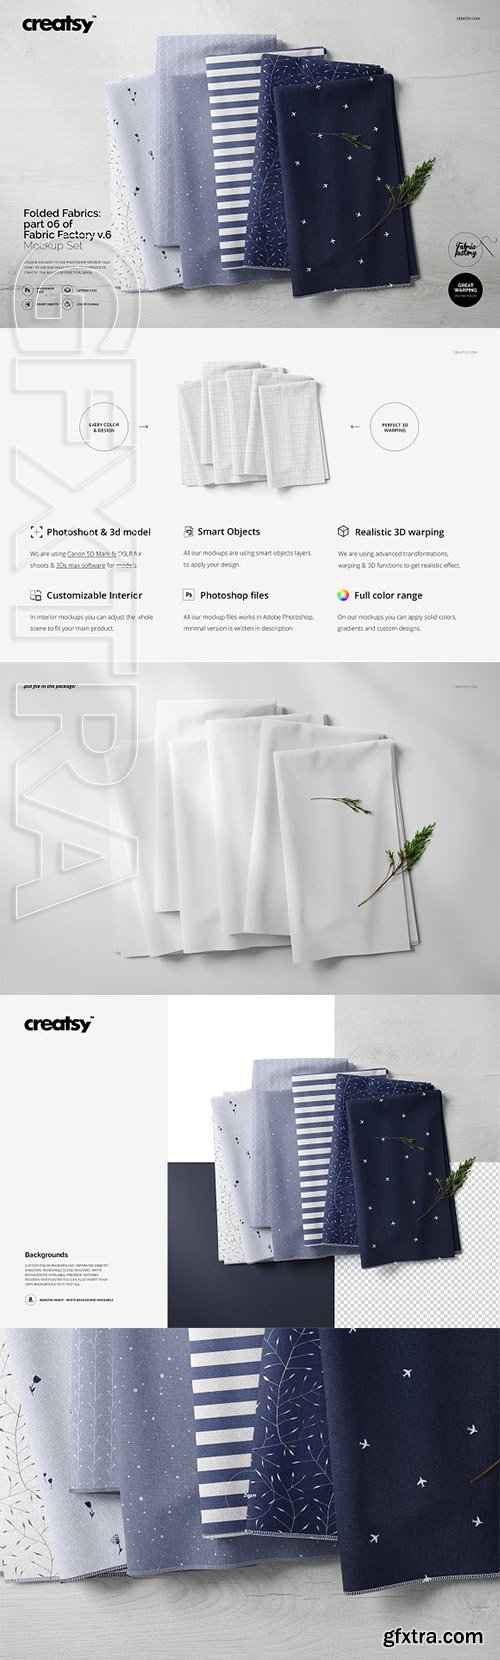 CreativeMarket - Fabric Stack Mockup 06 FF v 6 3274386